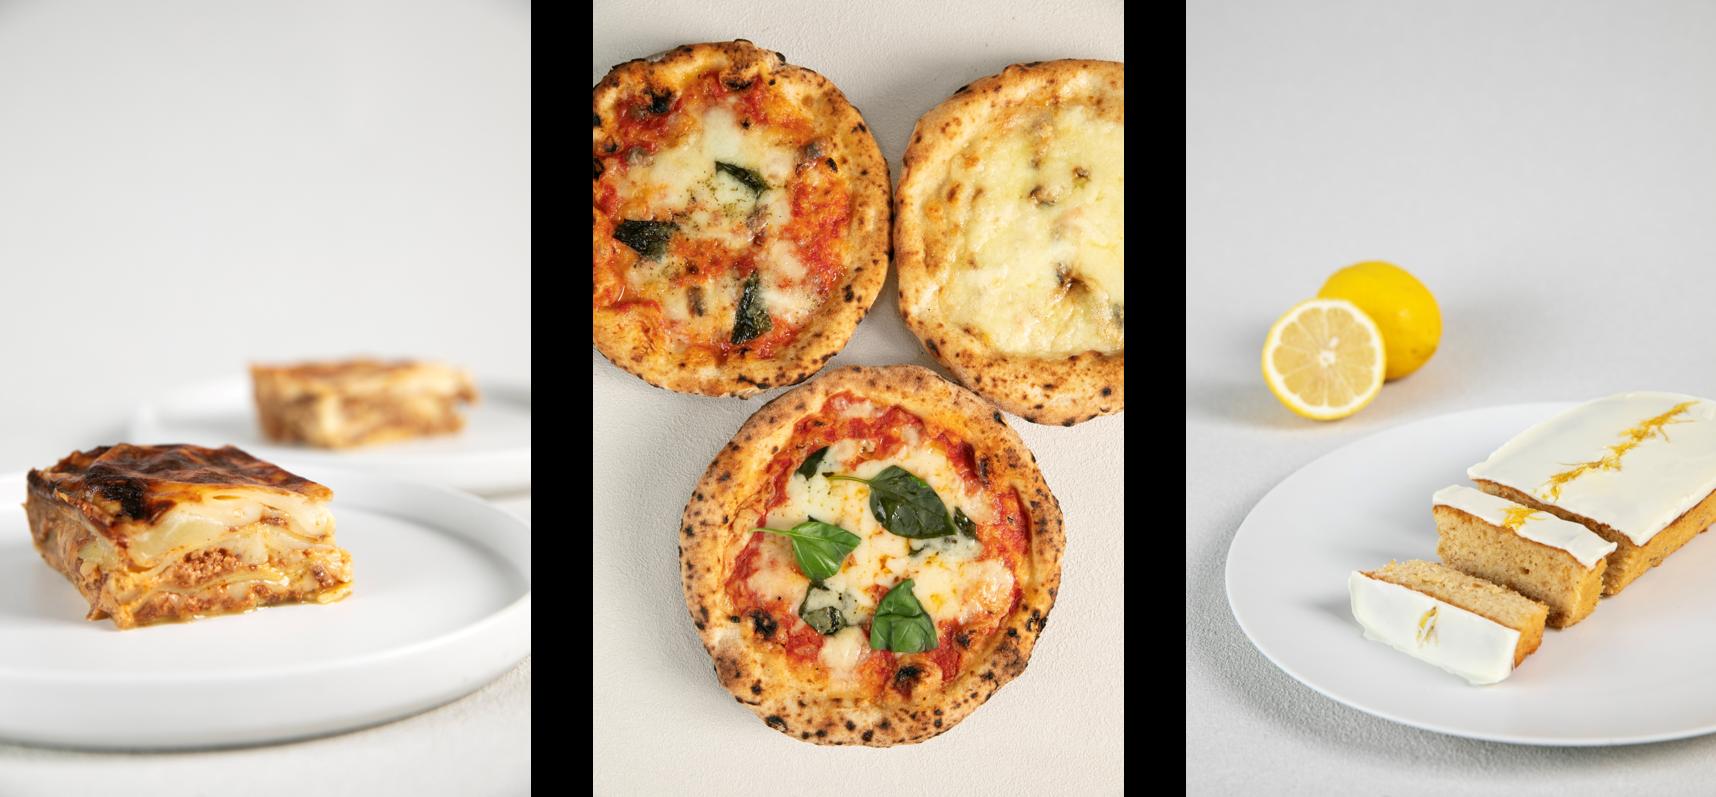 「食べログ ピザ 百名店」に4度選出 ナプレより、夏の贈り物に最適なイタリアンギフトが登場